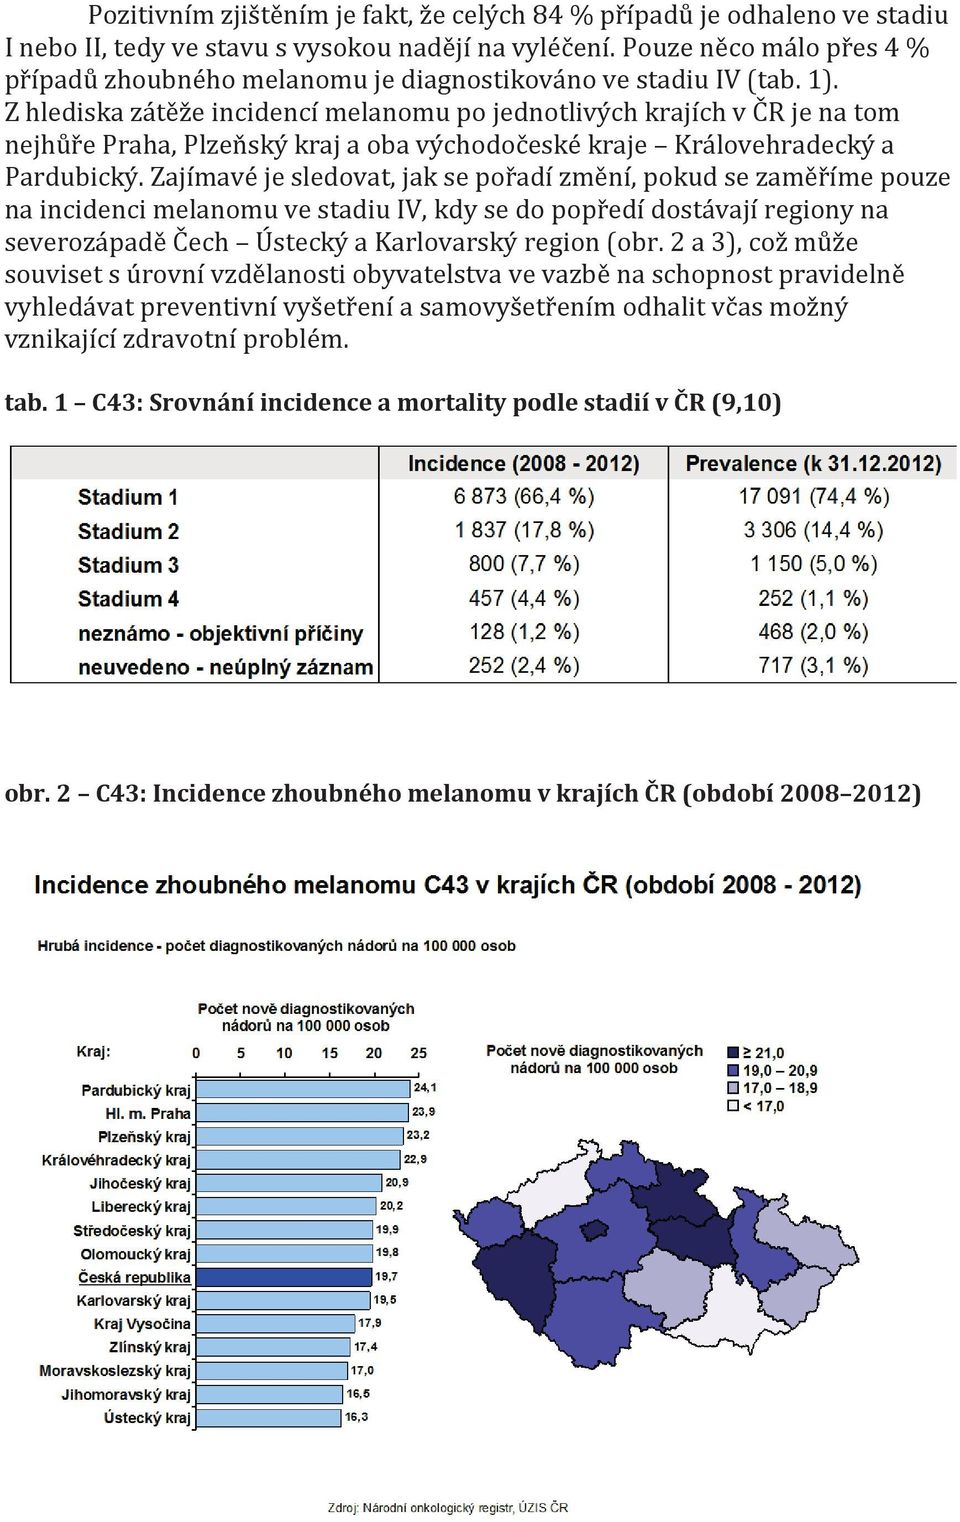 Z hlediska zátěže incidencí melanomu po jednotlivých krajích v ČR je na tom nejhůře Praha, Plzeňský kraj a oba východočeské kraje Královehradecký a Pardubický.